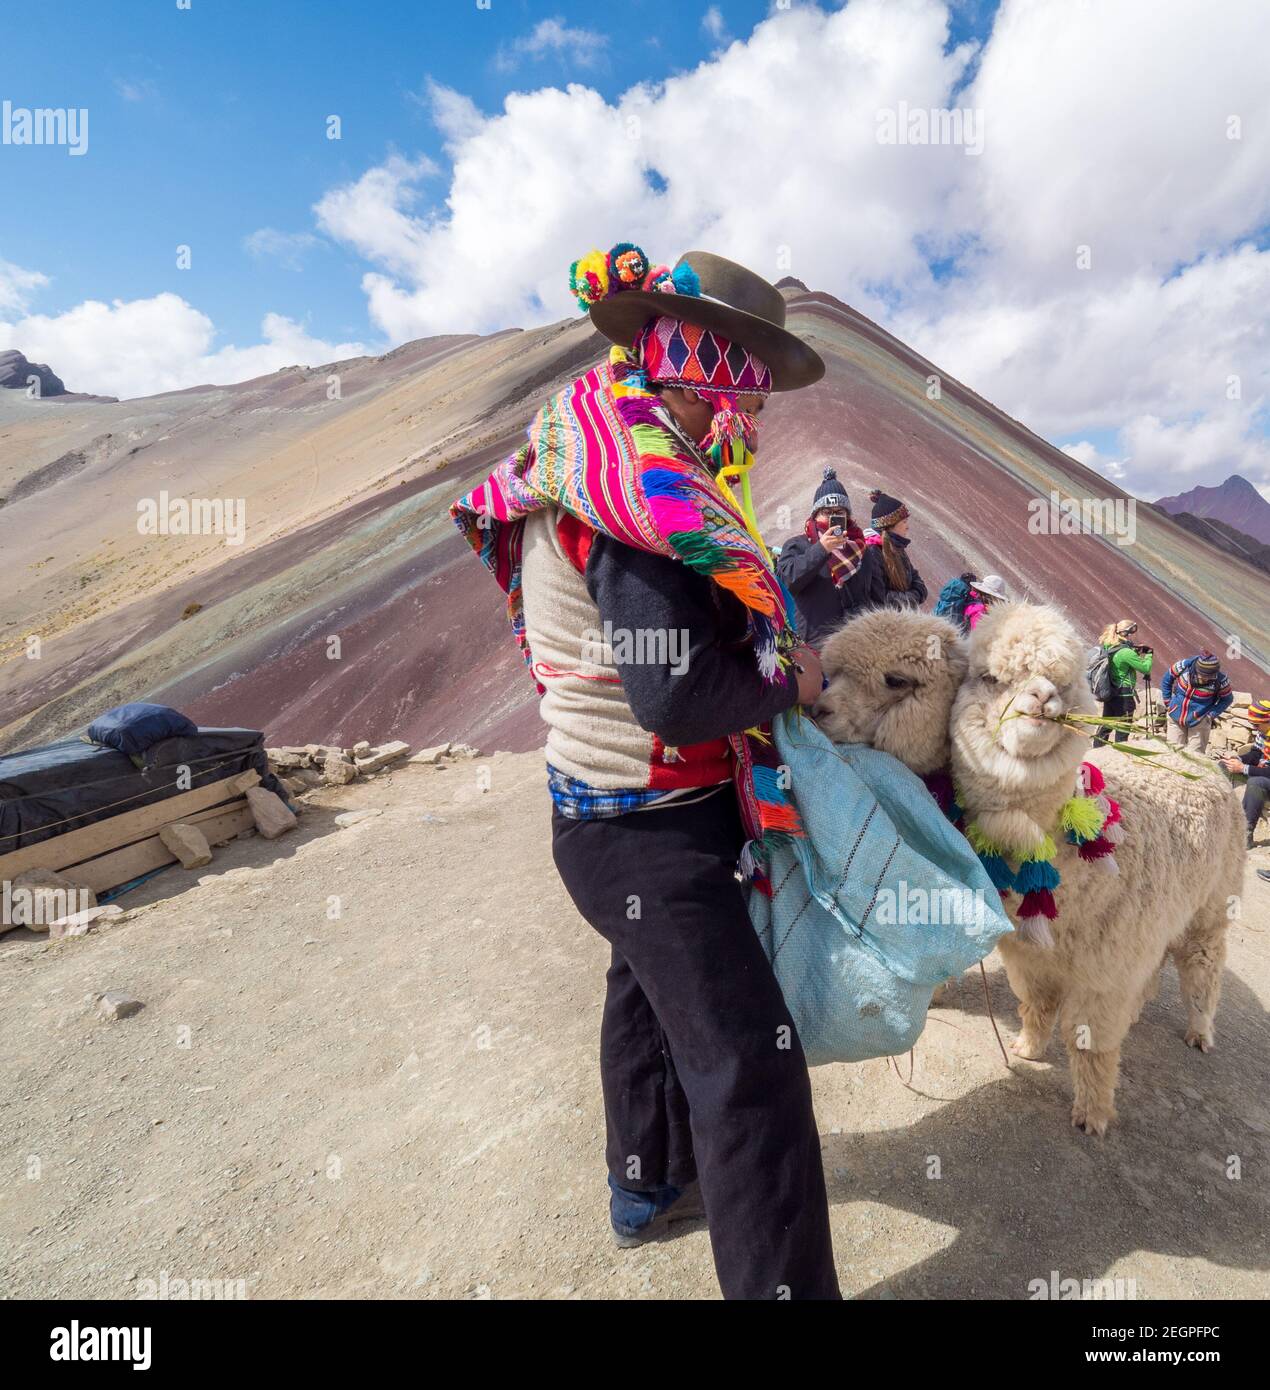 Perù, Vinicunca - 27 settembre 2019 - indiano vestito in colori brillanti alimenta lama alla montagna dei sette colori Foto Stock